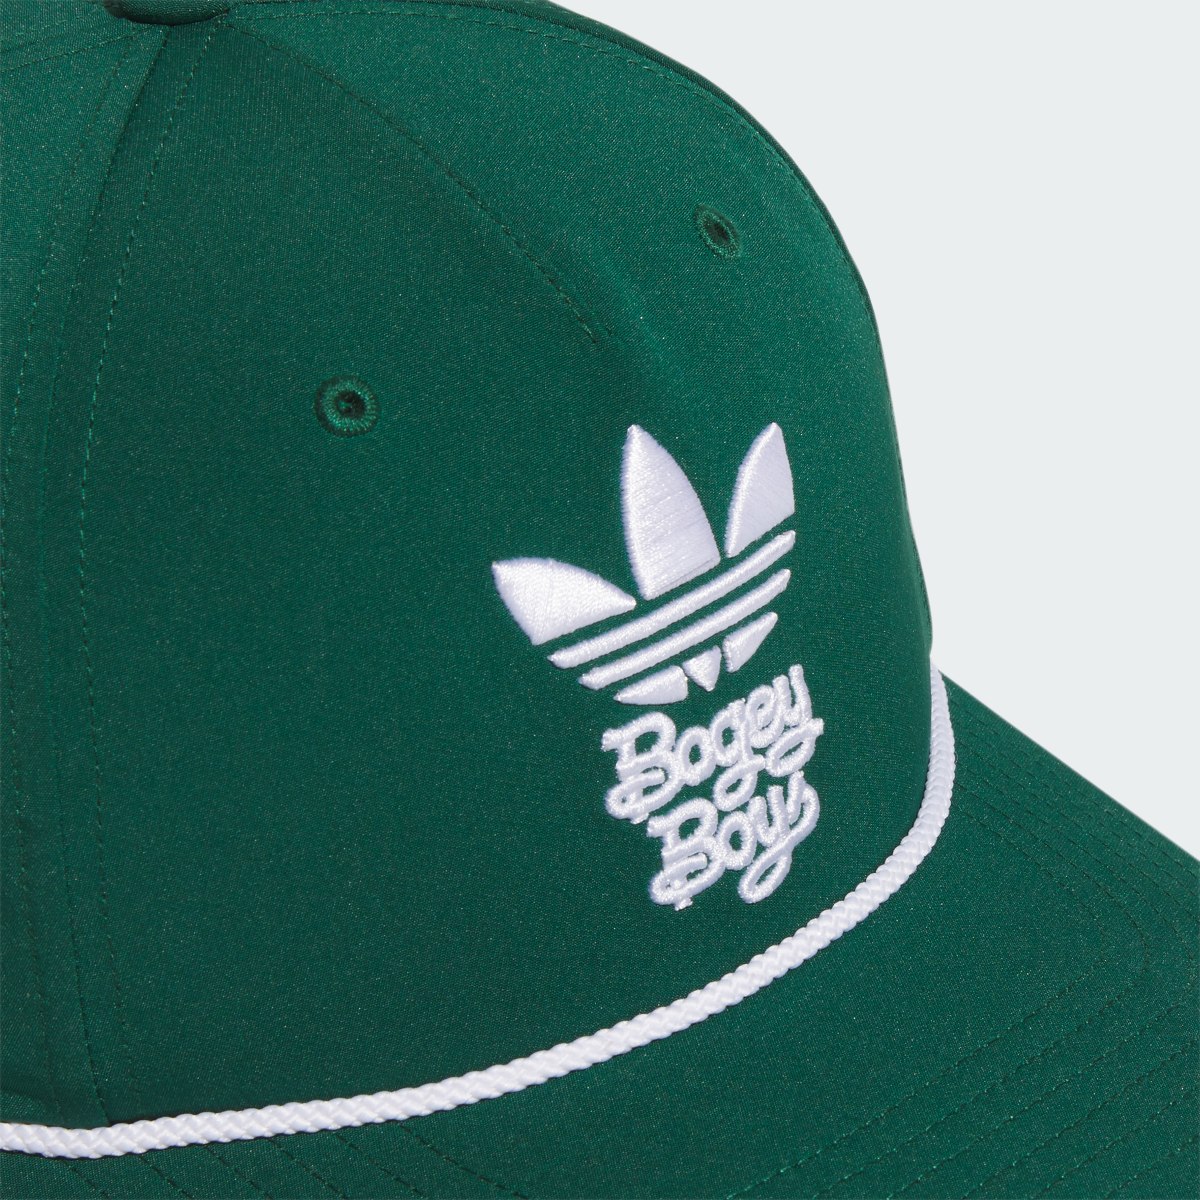 Adidas x Bogey Boys Hat. 4